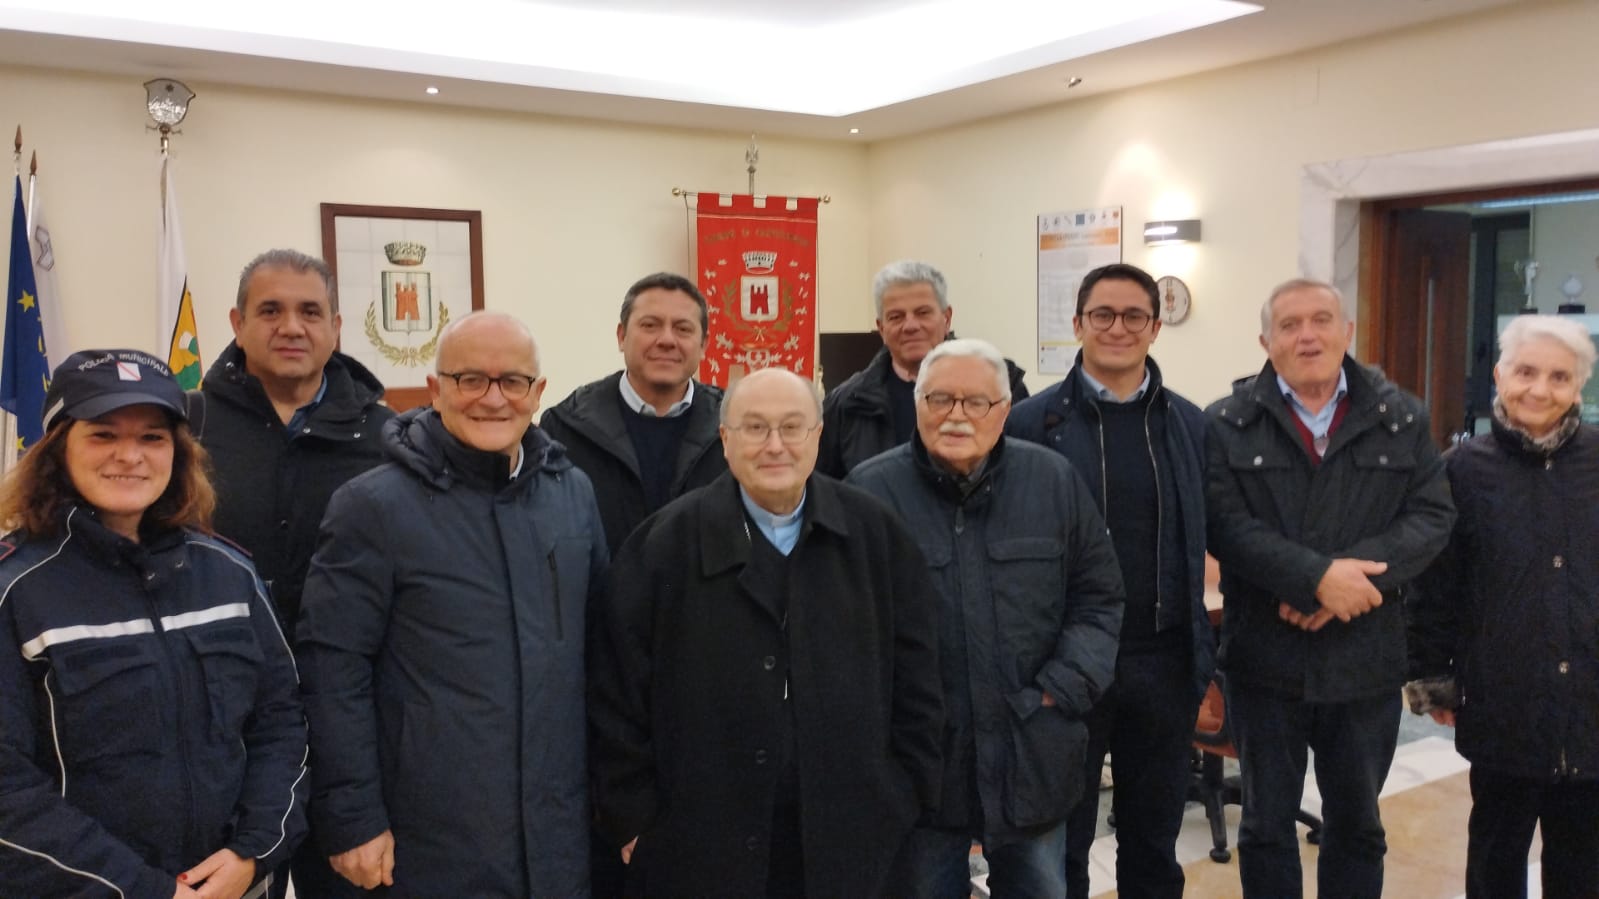 Castelvenere, monsignor Mazzafaro inaugura il Presepe Vivente della Valle Telesina